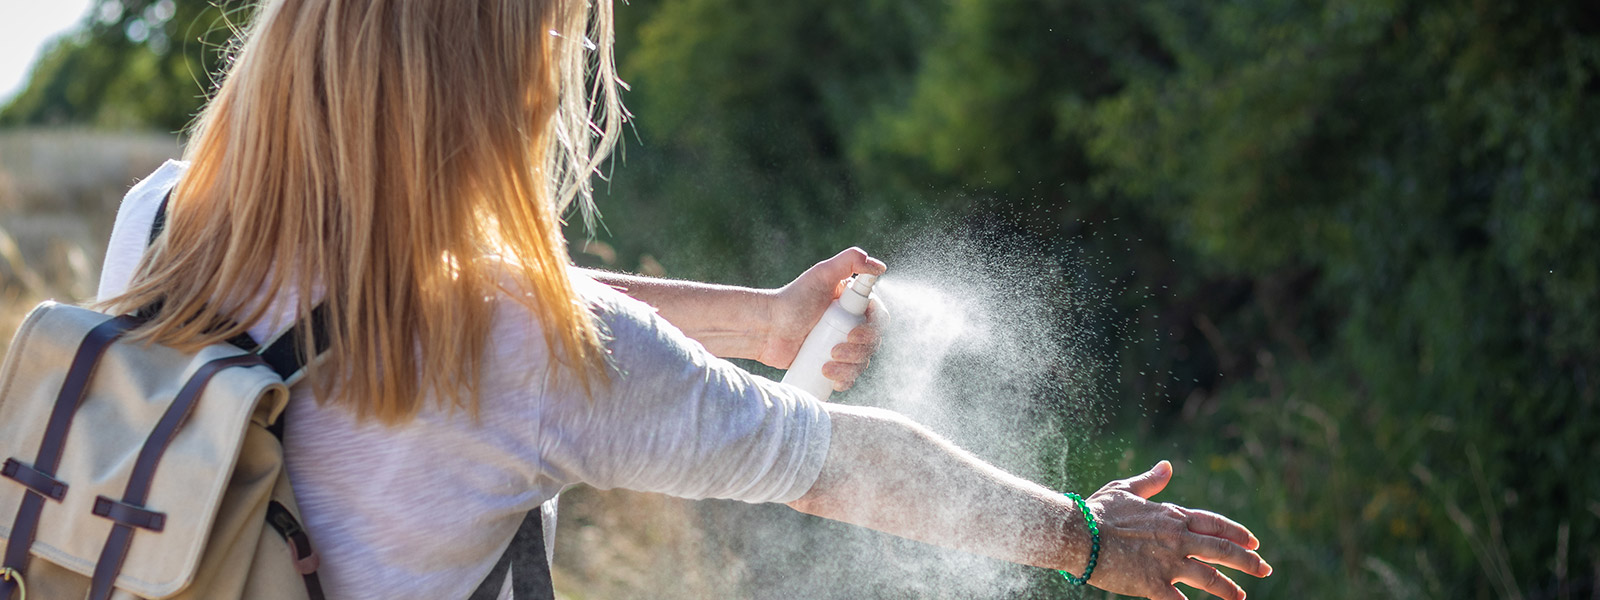 Woman spraying bug spray